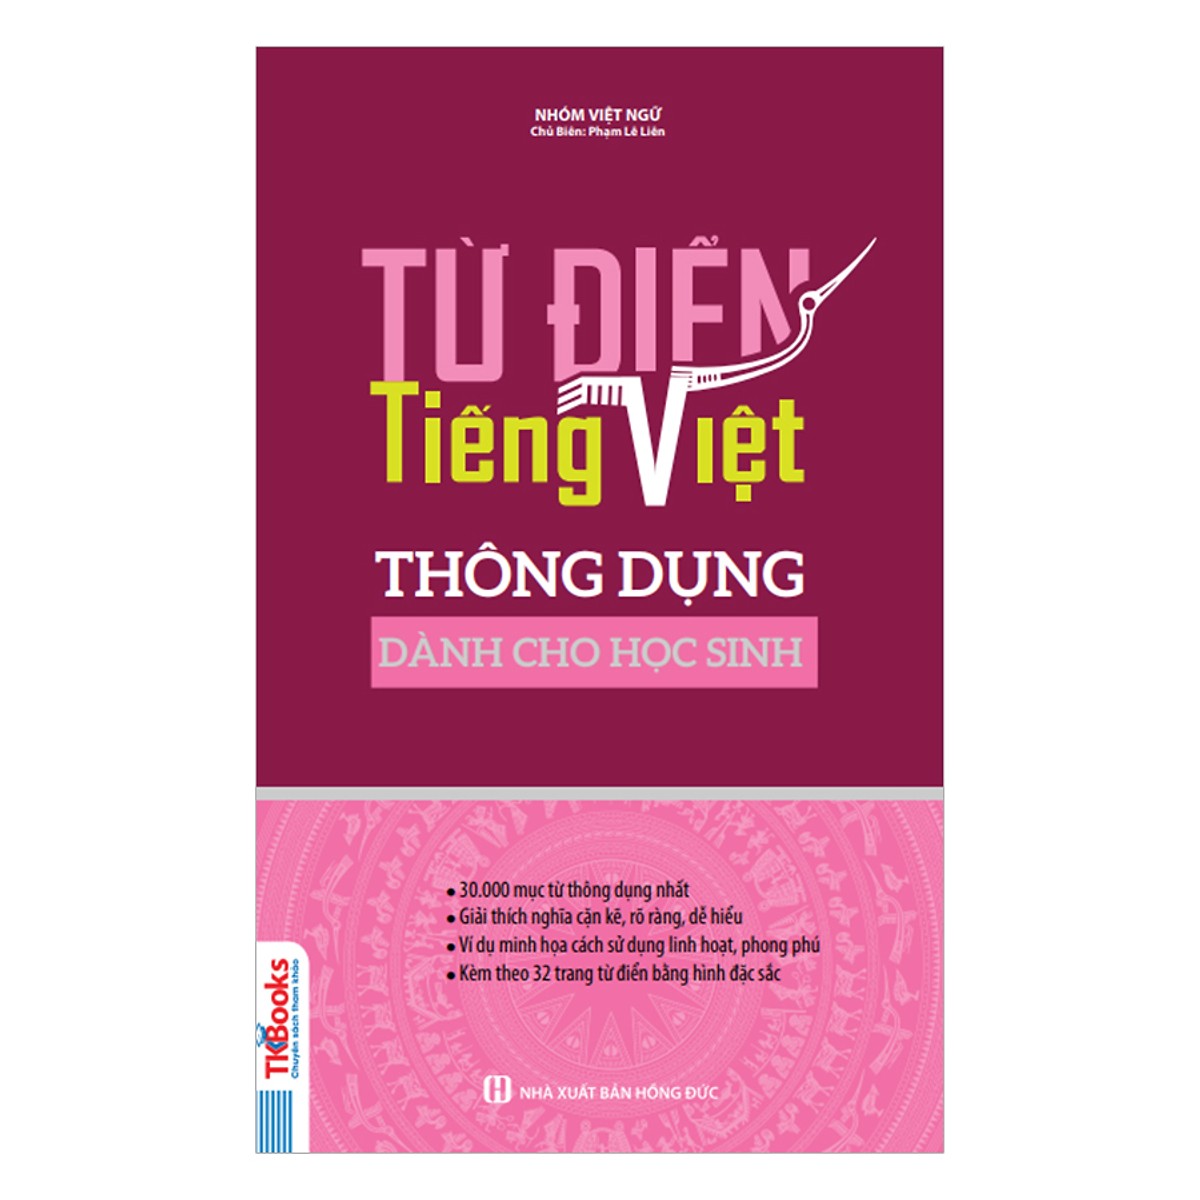 Từ Điển Tiếng Việt Thông Dụng Dành Cho Học Sinh - Khổ 10x16 (Bìa Màu Hồng) (Tặng Kèm Bút Hoạt Hình Cực Xinh)